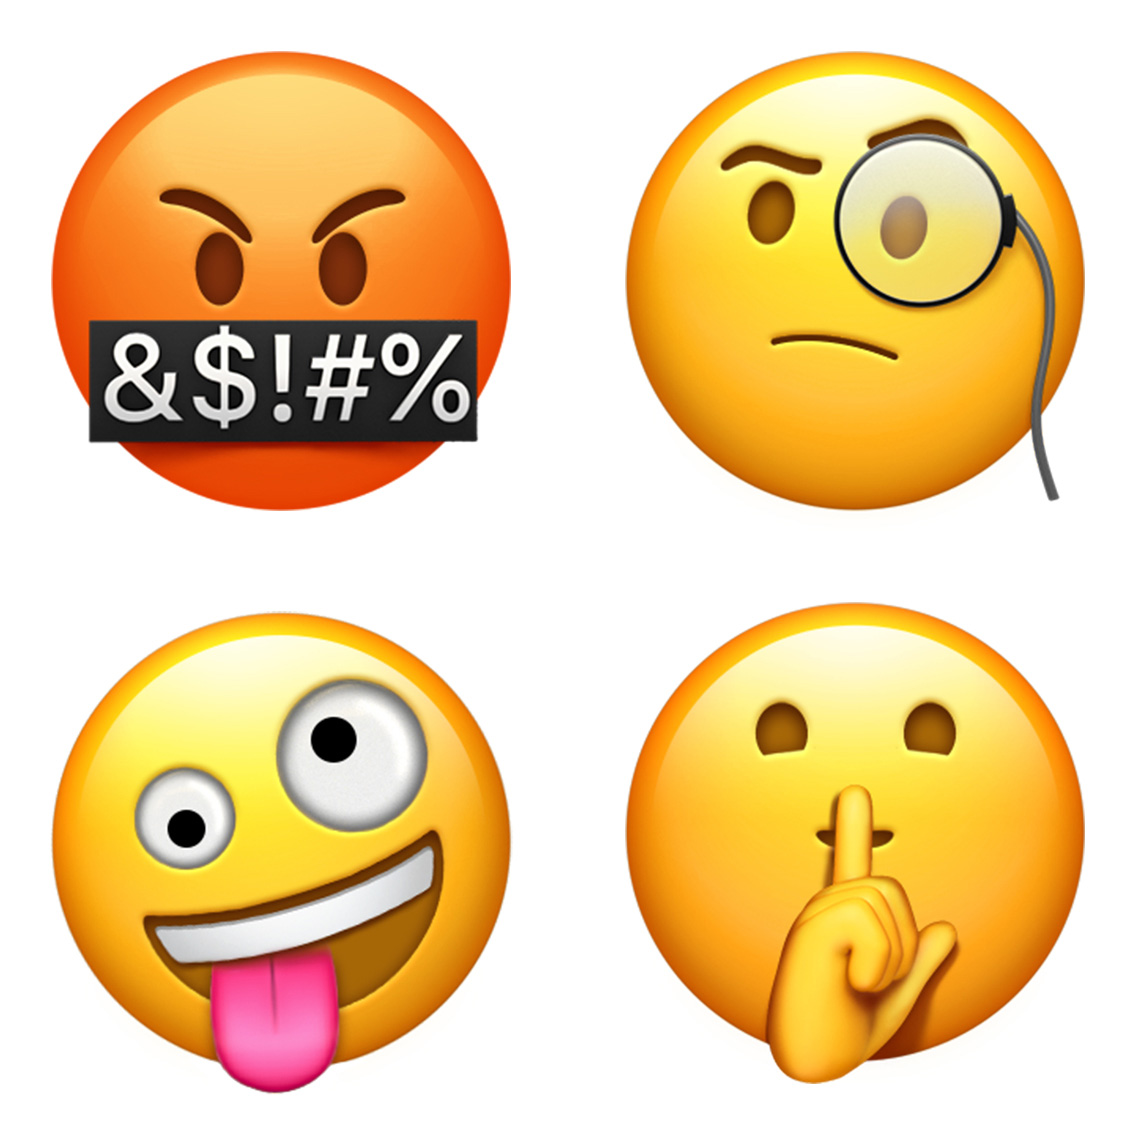 apple_emoji_update_2017_faces.jpg